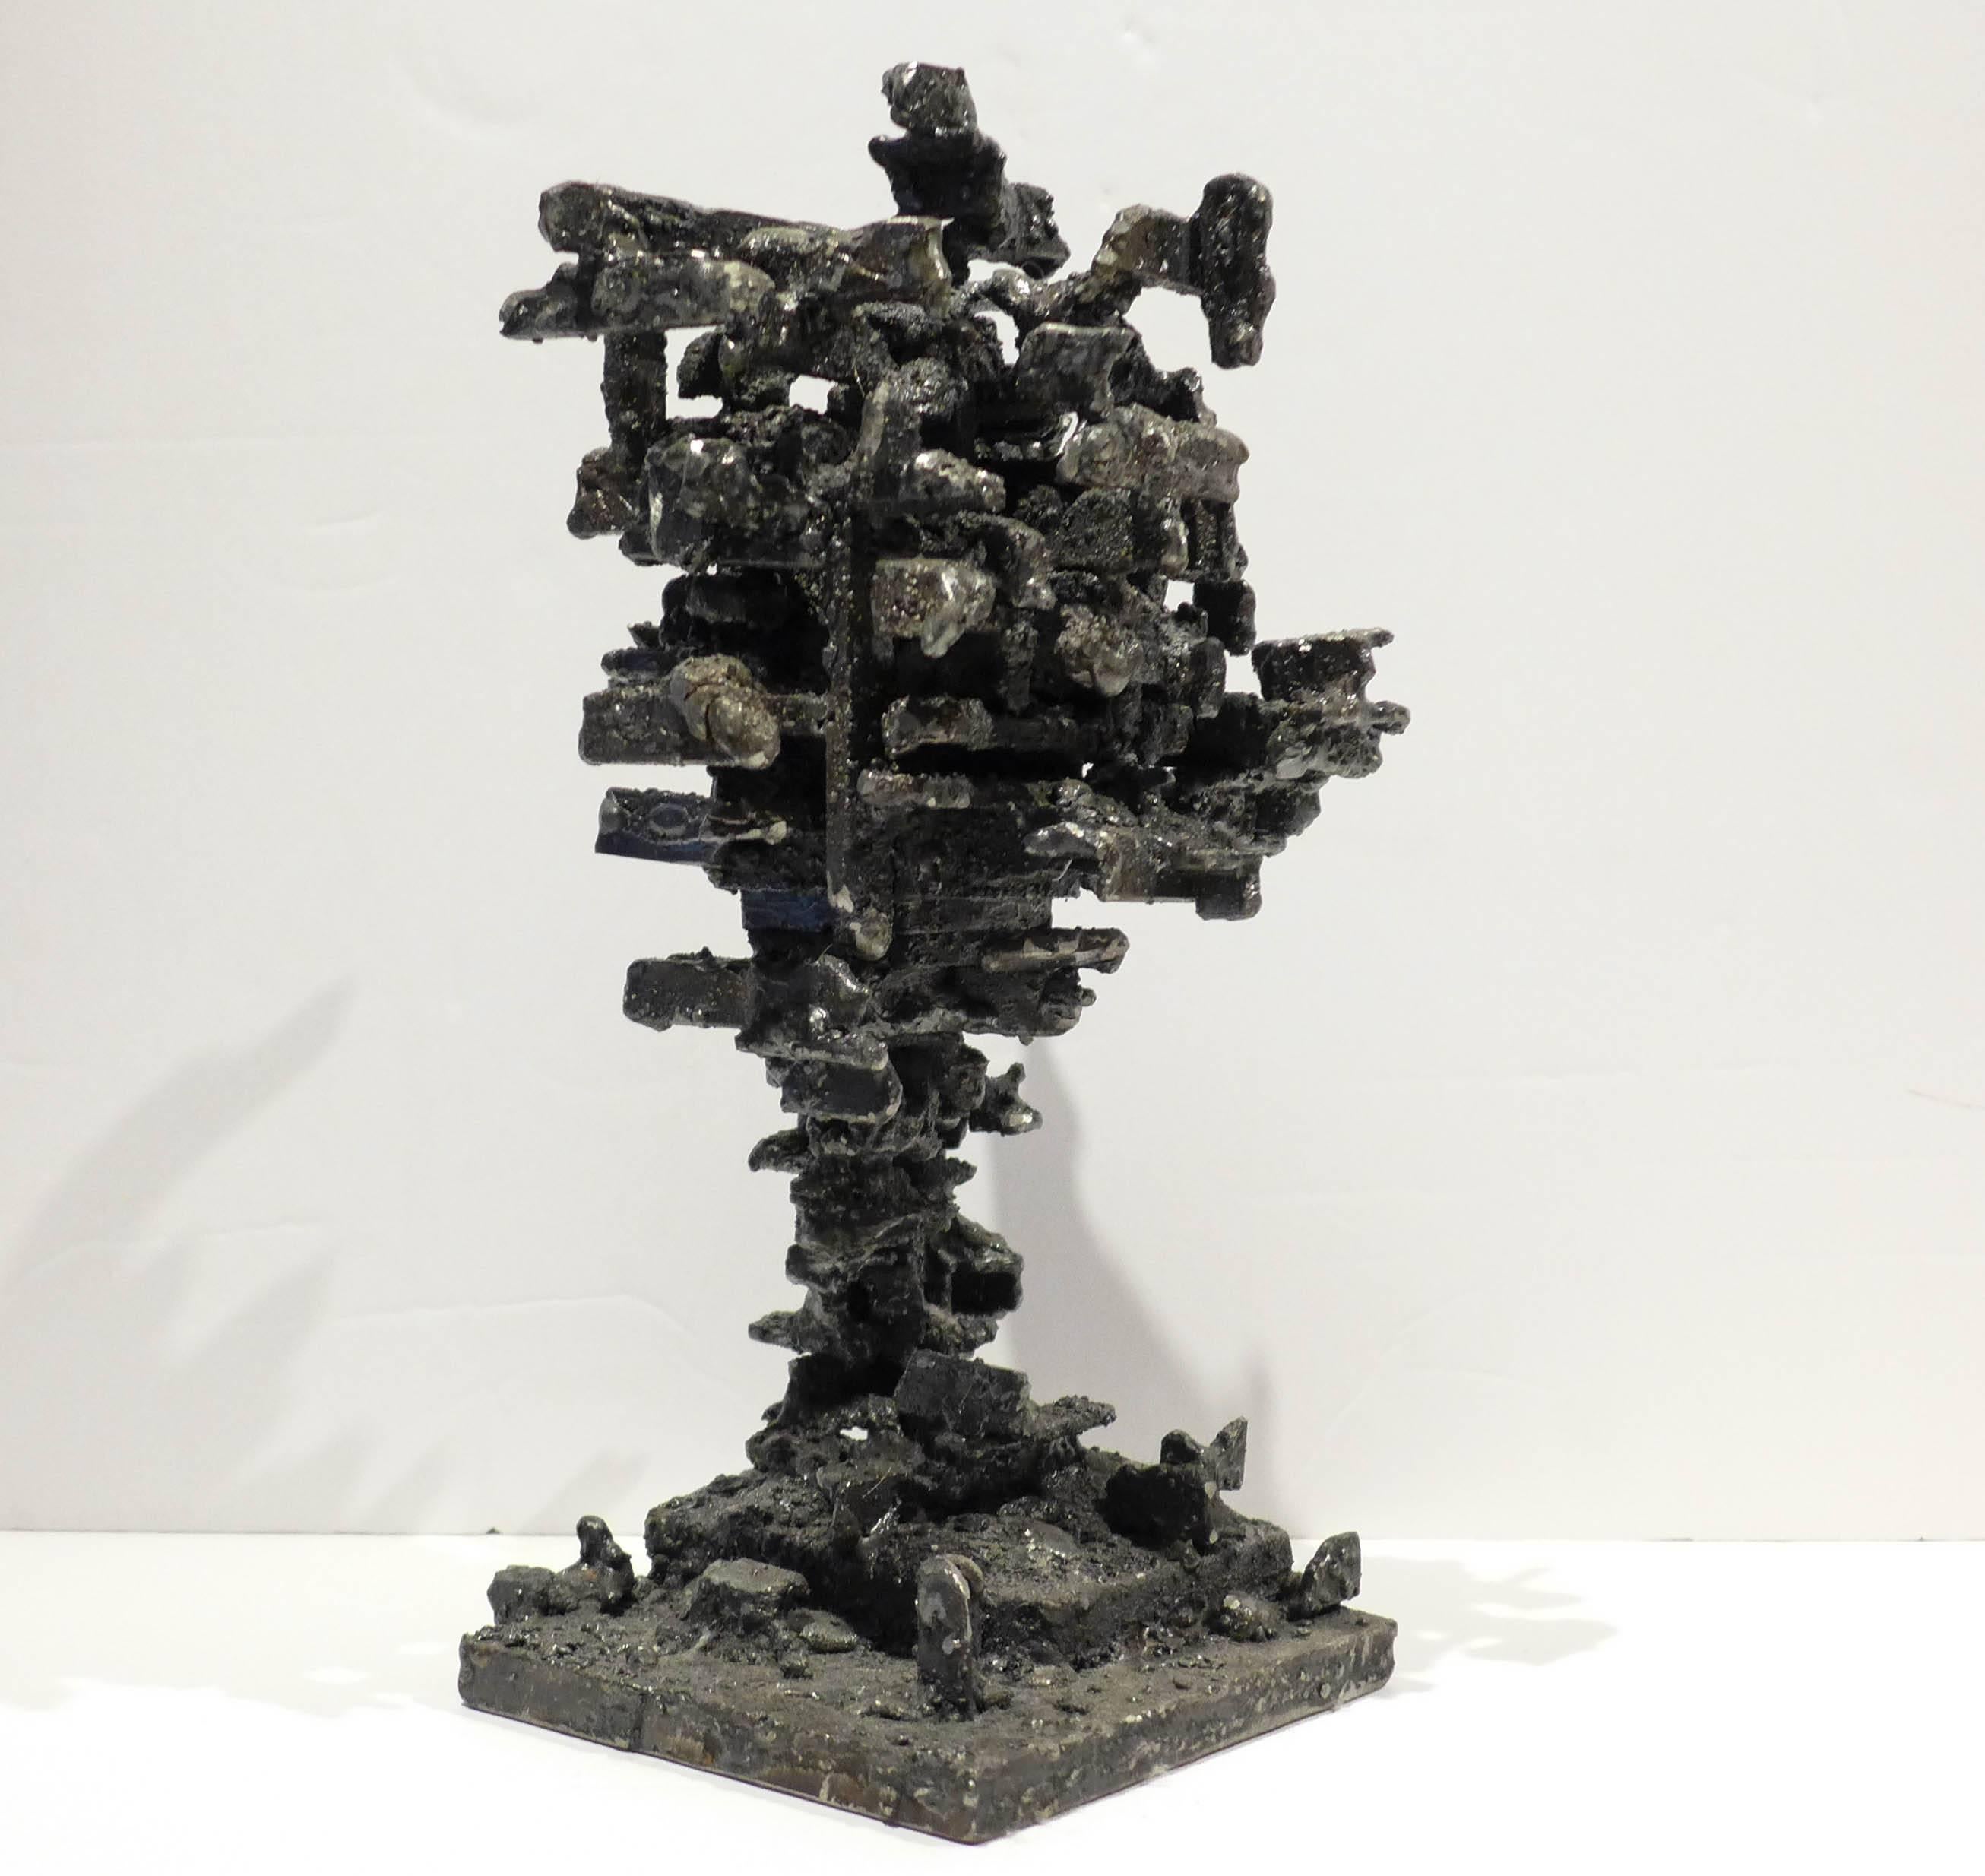 Skulpturaler Kasten aus geschwärztem und poliertem Stahl, der auf einer schlanken Säule ruht. Aus der Serie Dwelling, 2015, des Künstlers James Anthony Bearden aus Des Moines.